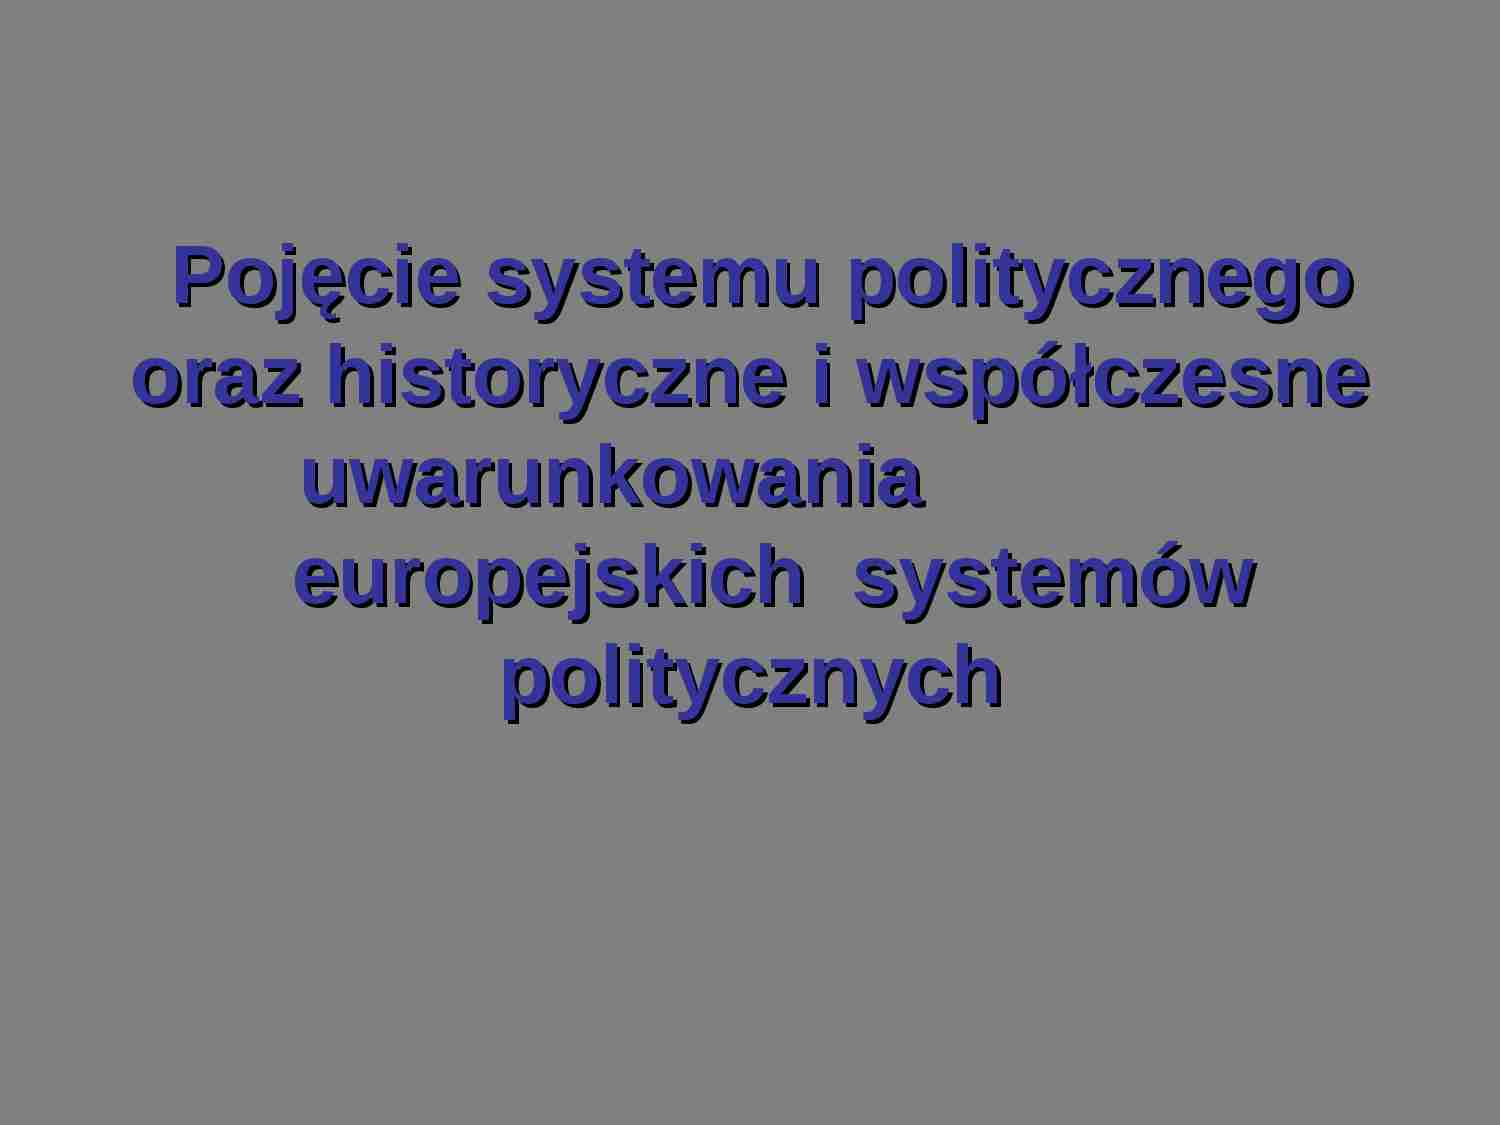 Pojęcie systemu politycznego - prezentacja - strona 1